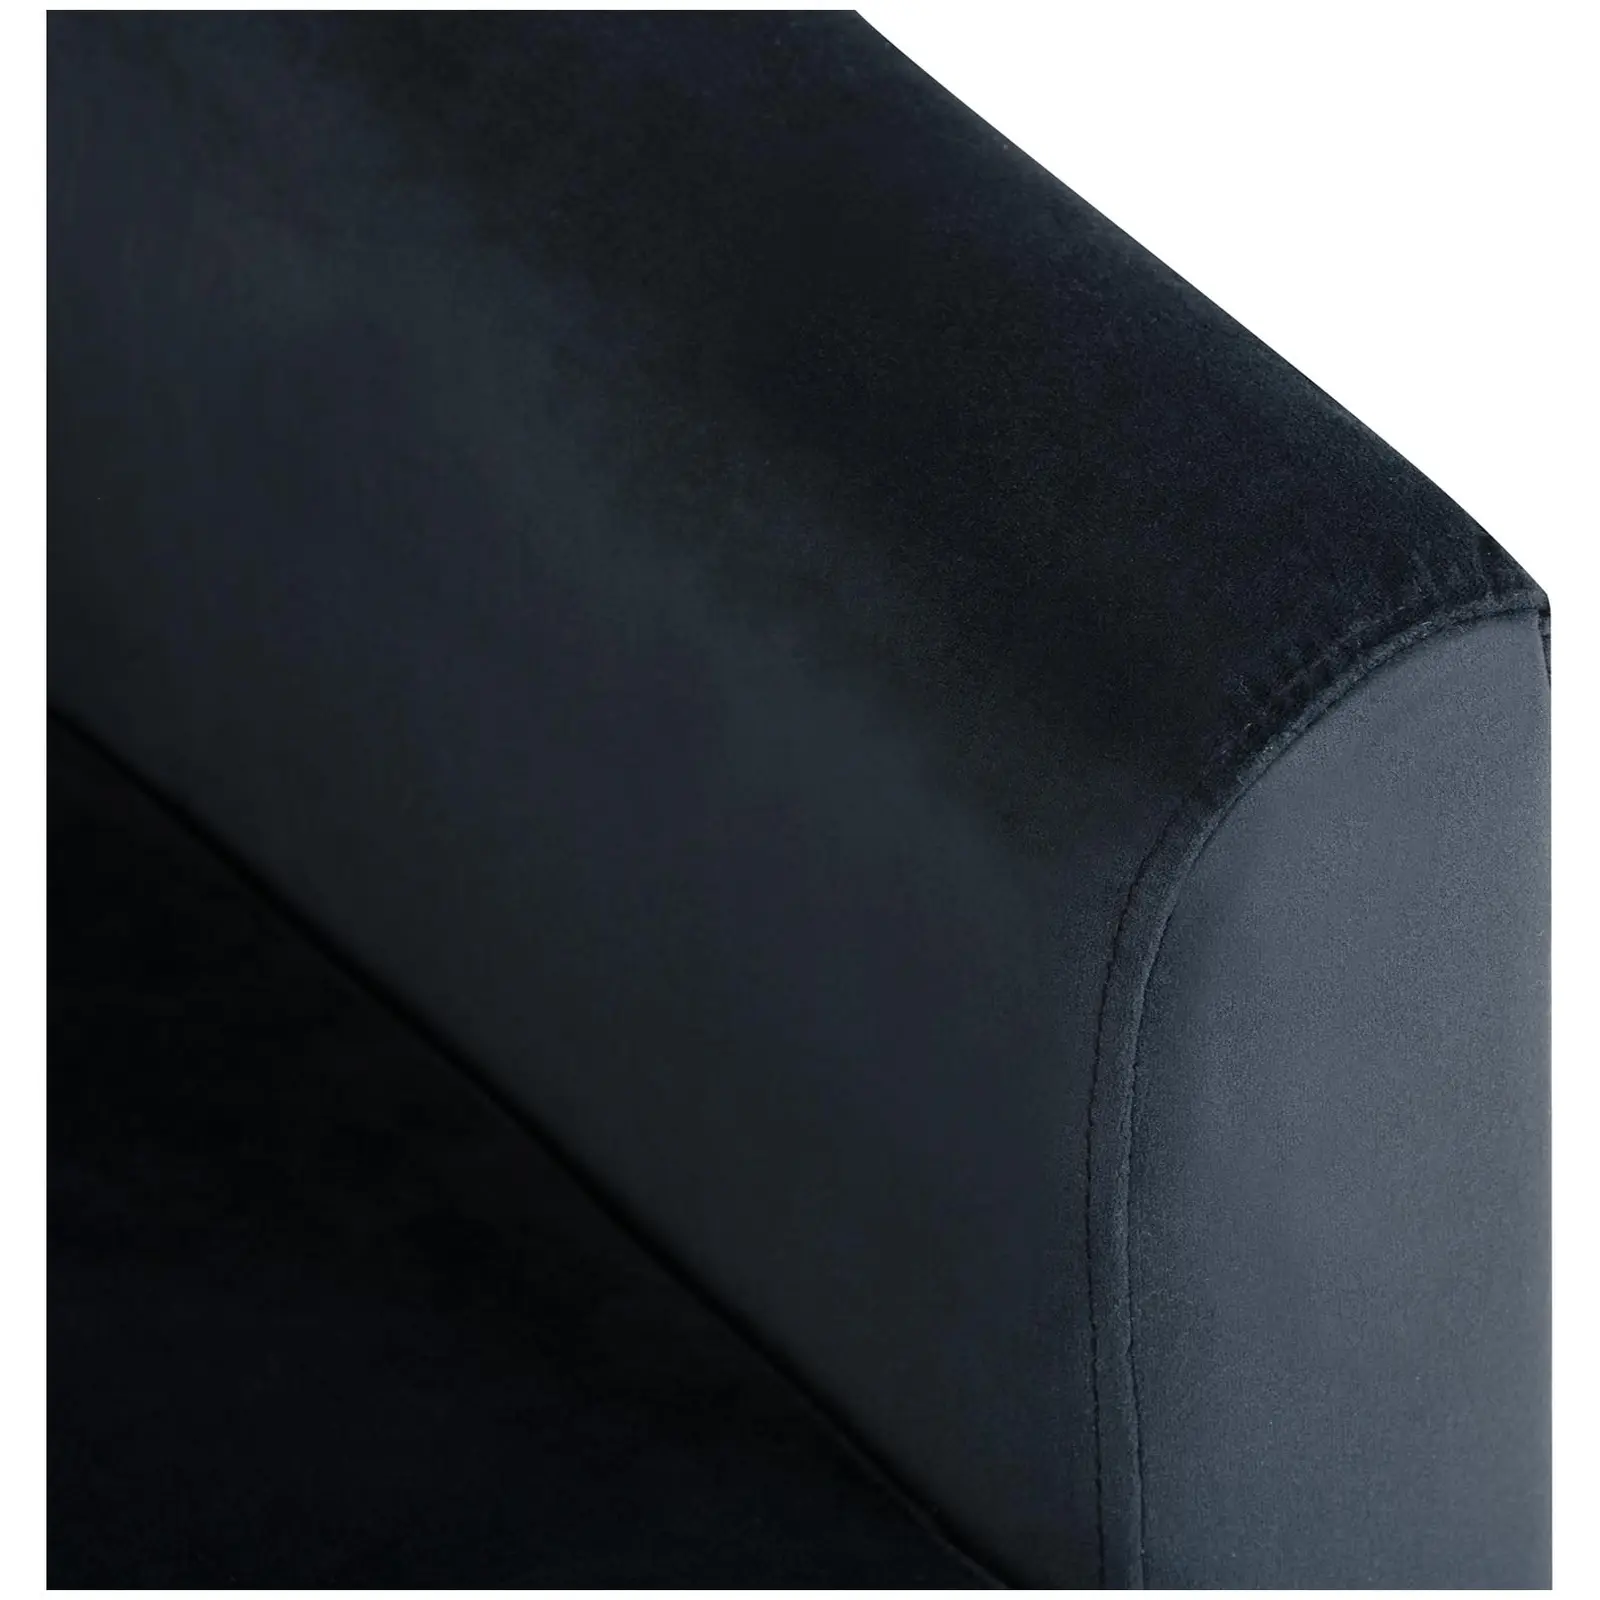 B-zboží Čalouněná židle - do 180 kg - sedací plocha 49 x 53 cm - černá